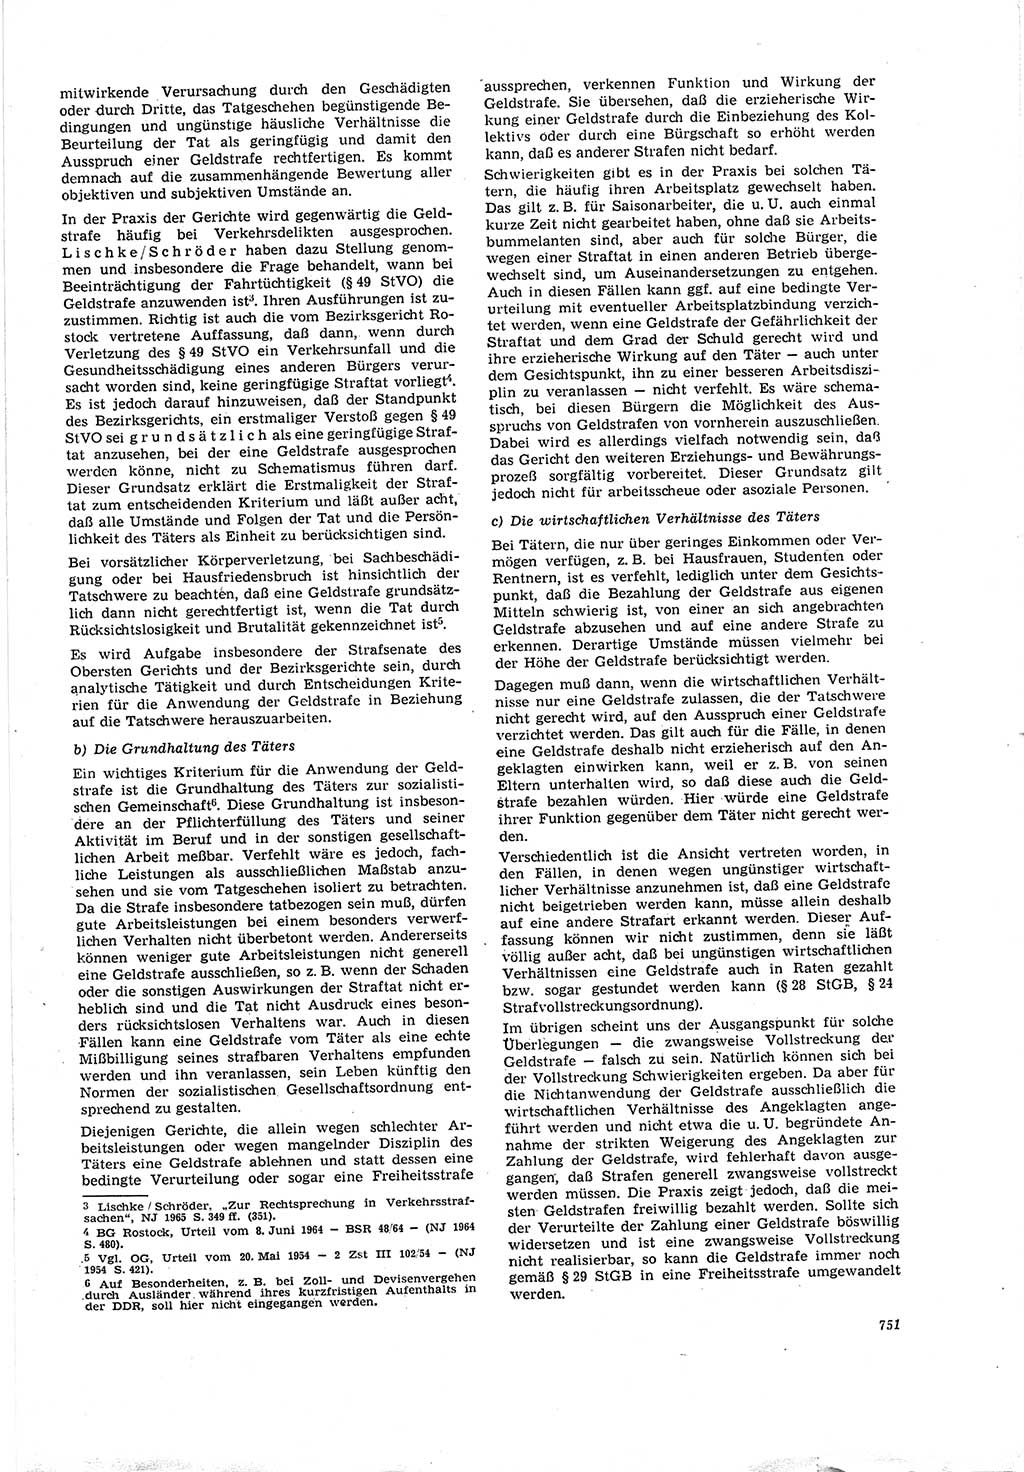 Neue Justiz (NJ), Zeitschrift für Recht und Rechtswissenschaft [Deutsche Demokratische Republik (DDR)], 20. Jahrgang 1966, Seite 751 (NJ DDR 1966, S. 751)